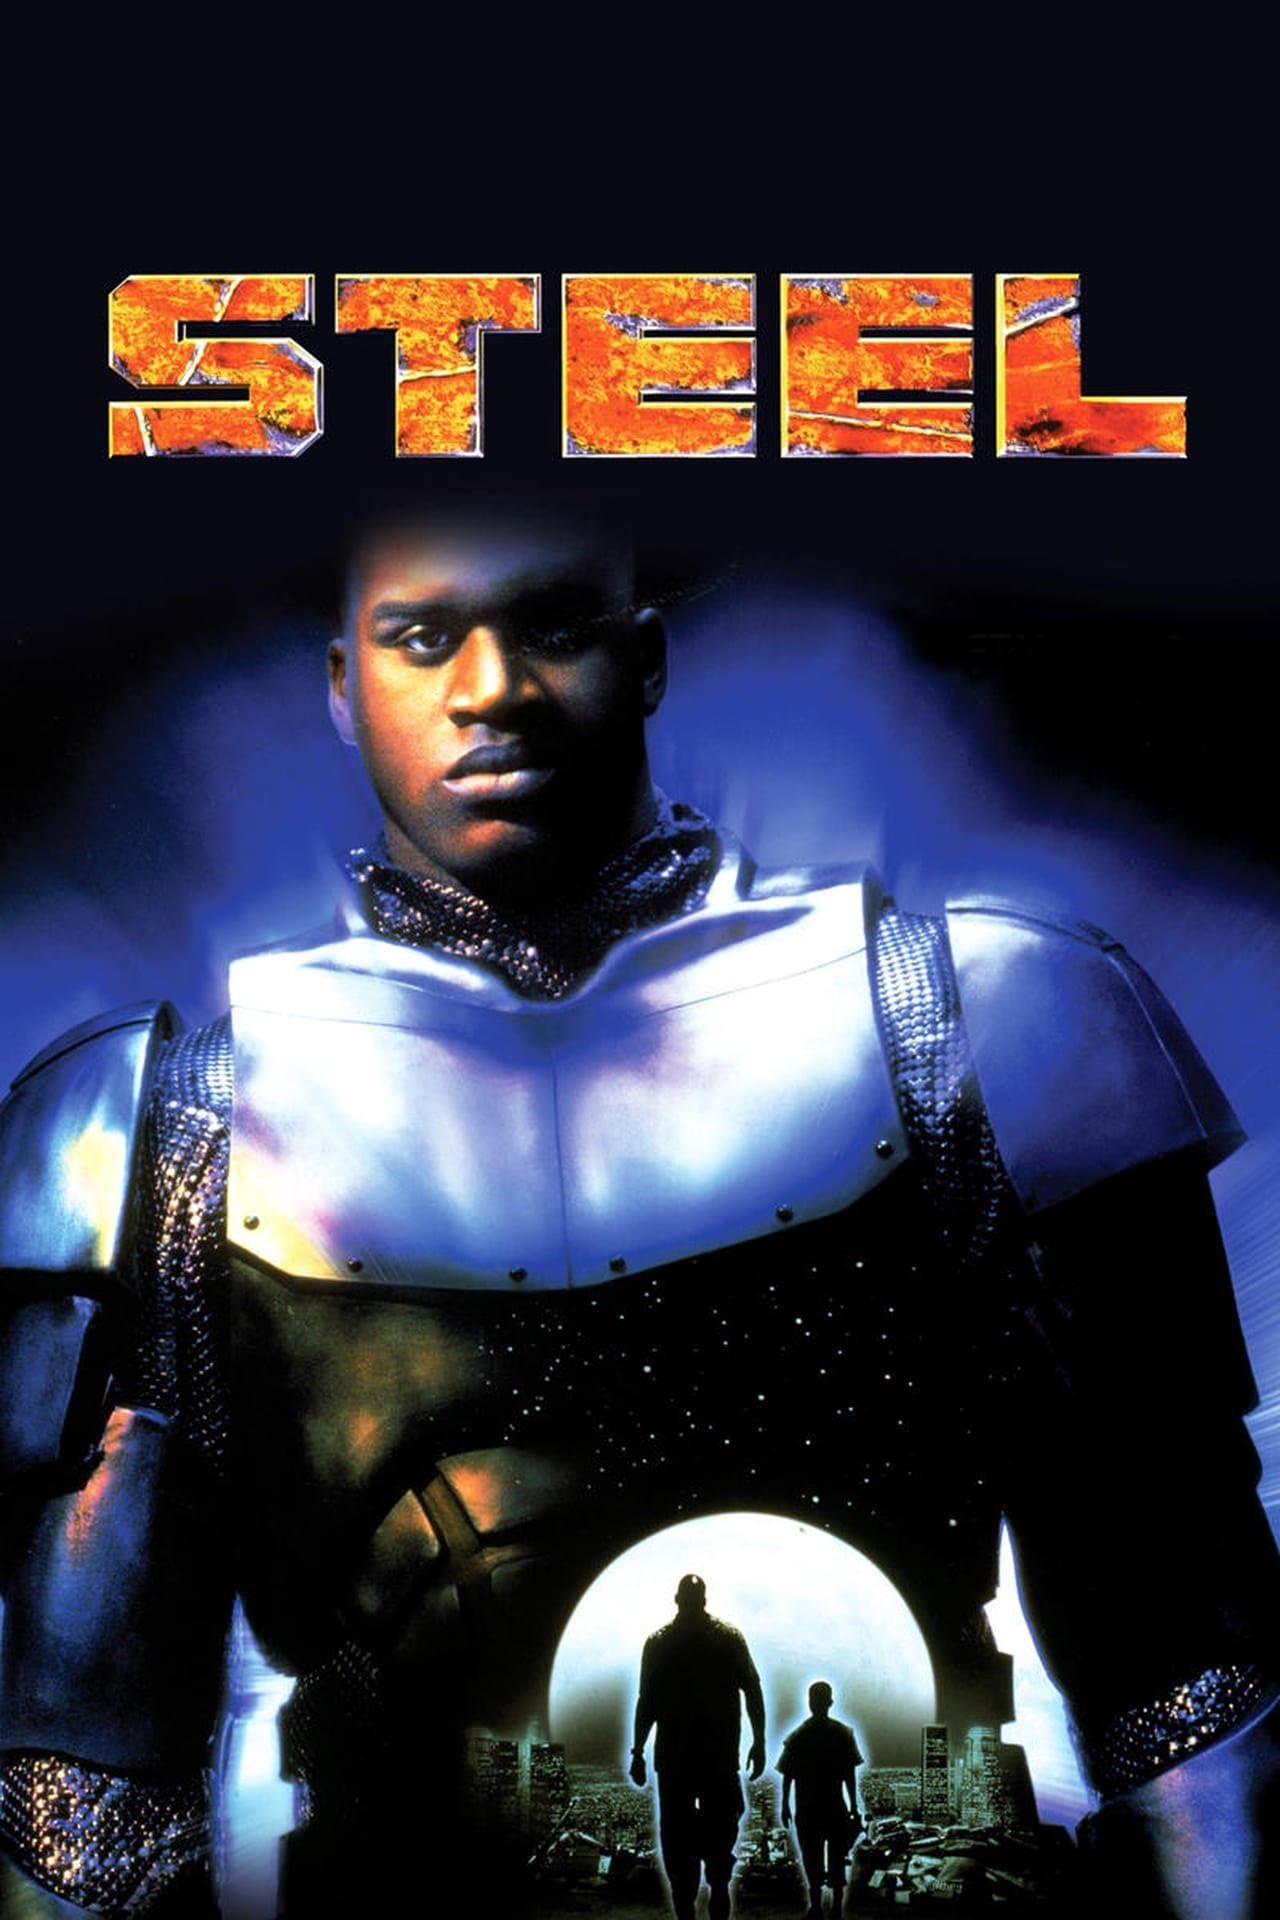 Cartell de la pel·lícula d'acer que mostra Shaquille O'Neal amb armadura